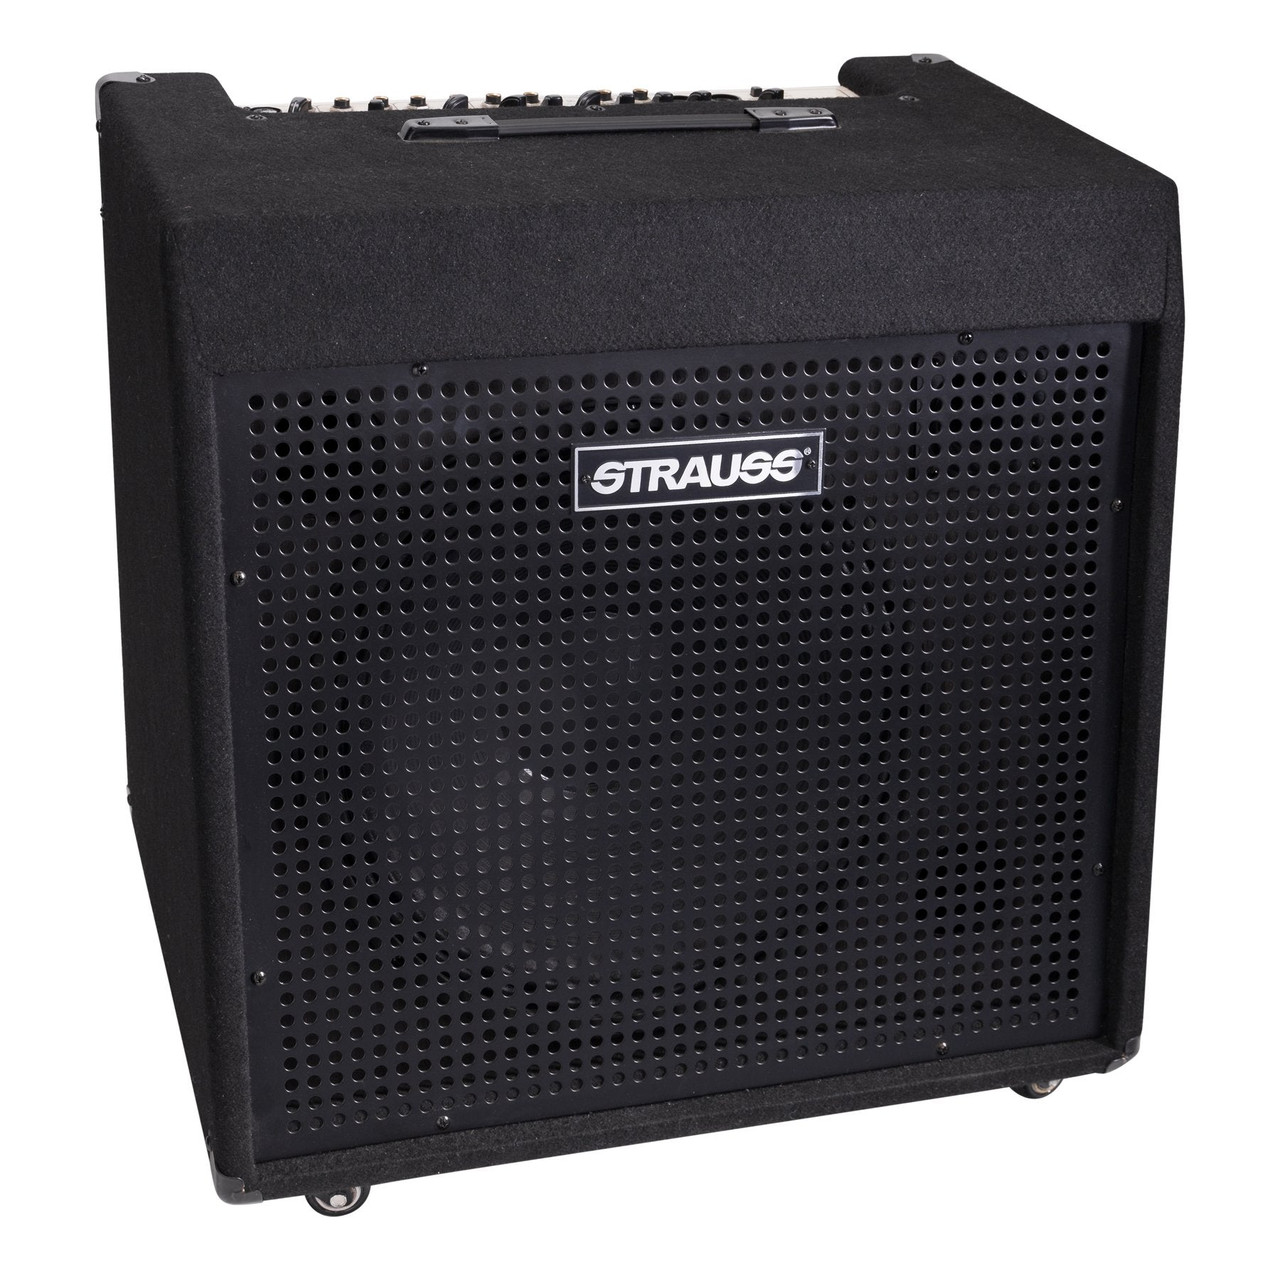 Strauss 200 Watt Keyboard Multi-Purpose Full Range Amplifier (Black)